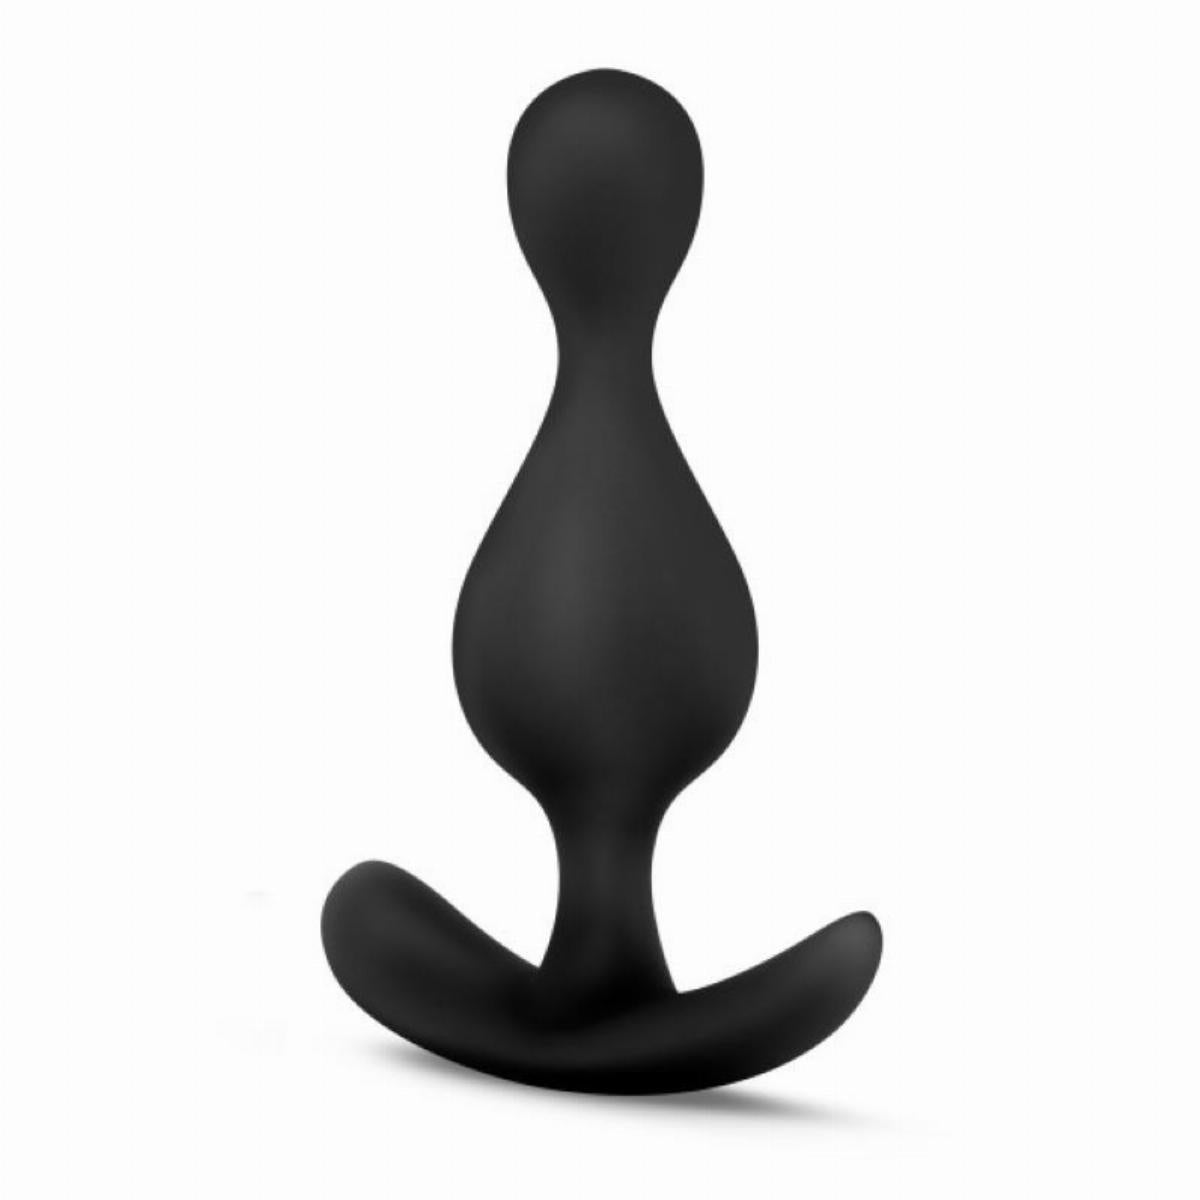 Zwarte buttplug van siliconen met golven, ontworpen door Anal Adventures voor gay mannen en te koop bij Flavourez.